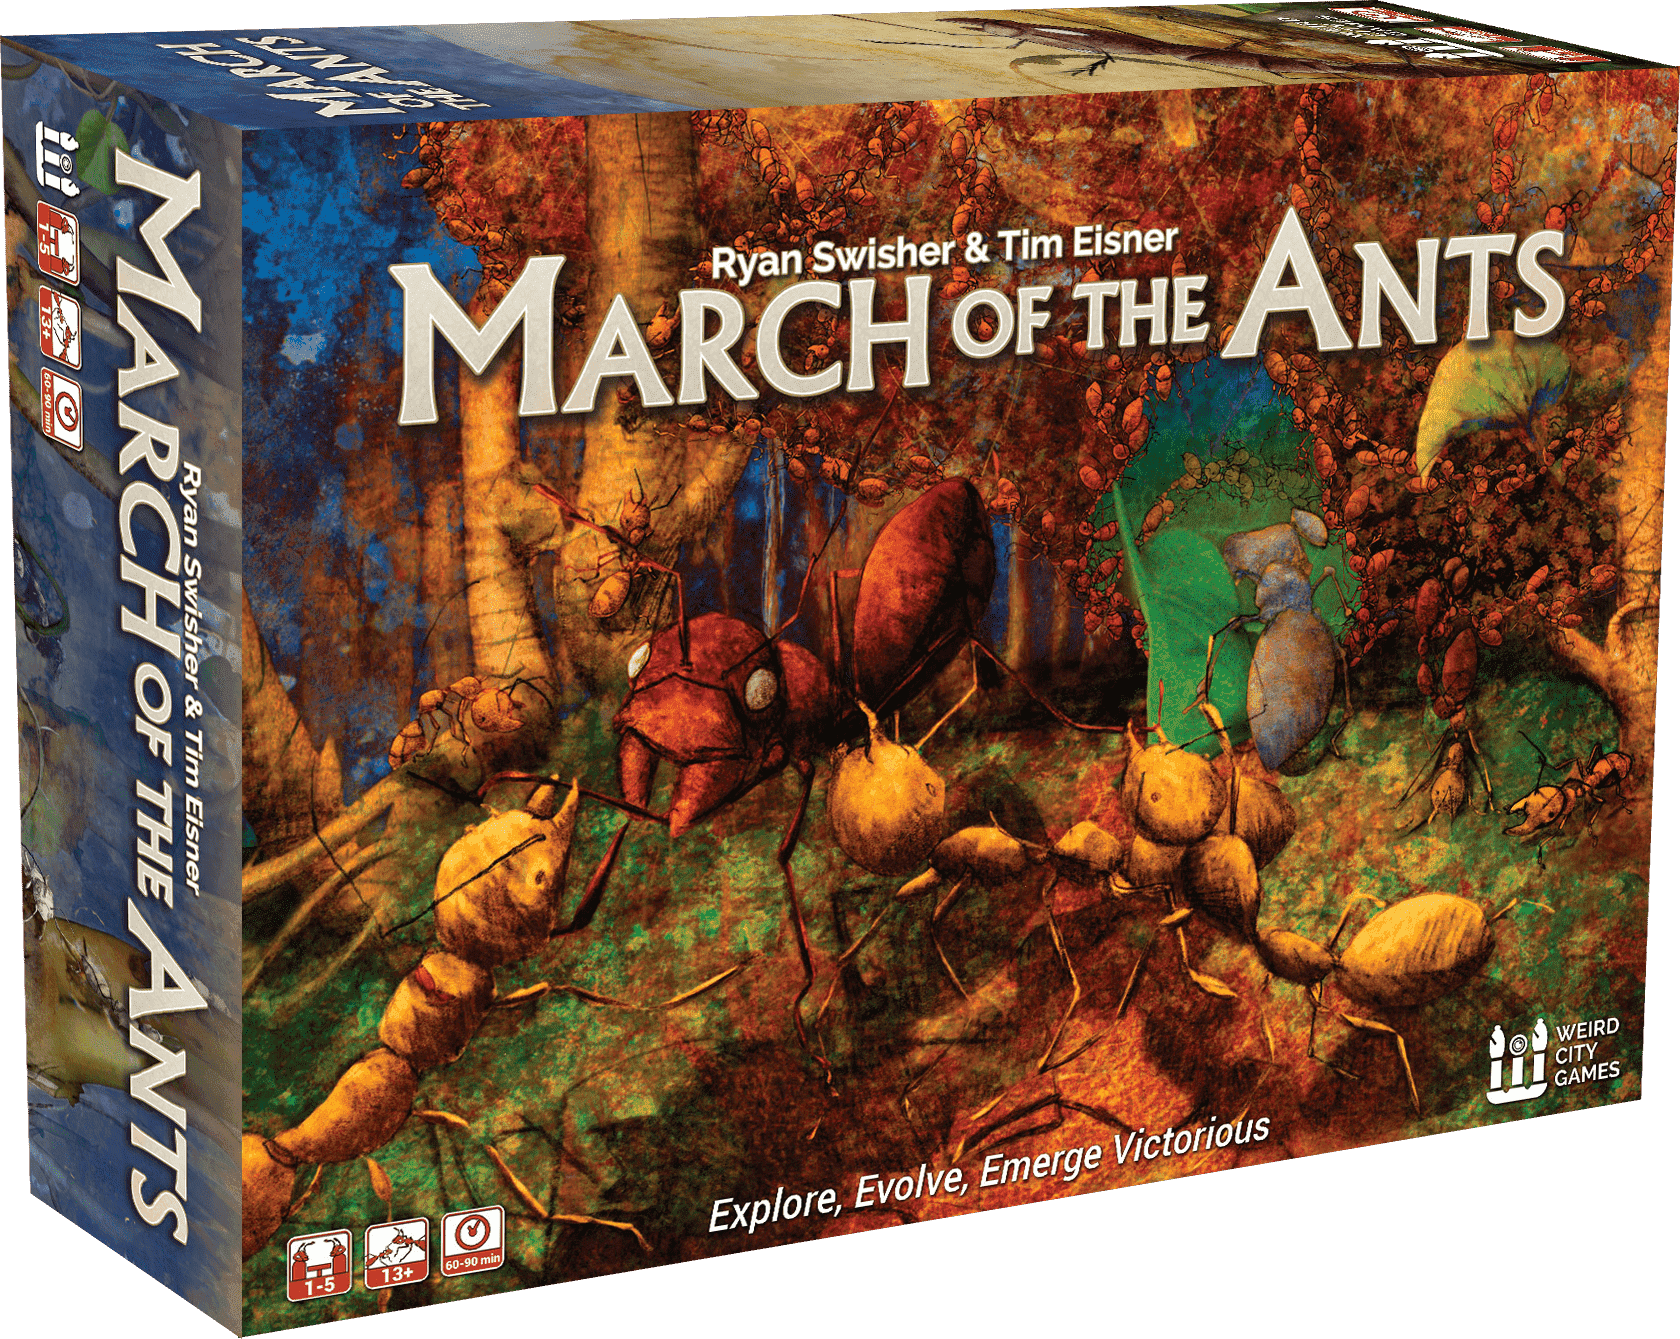 لعبة March of the Ants (Kickstarter Special) على Kickstarter Board Weird City Games